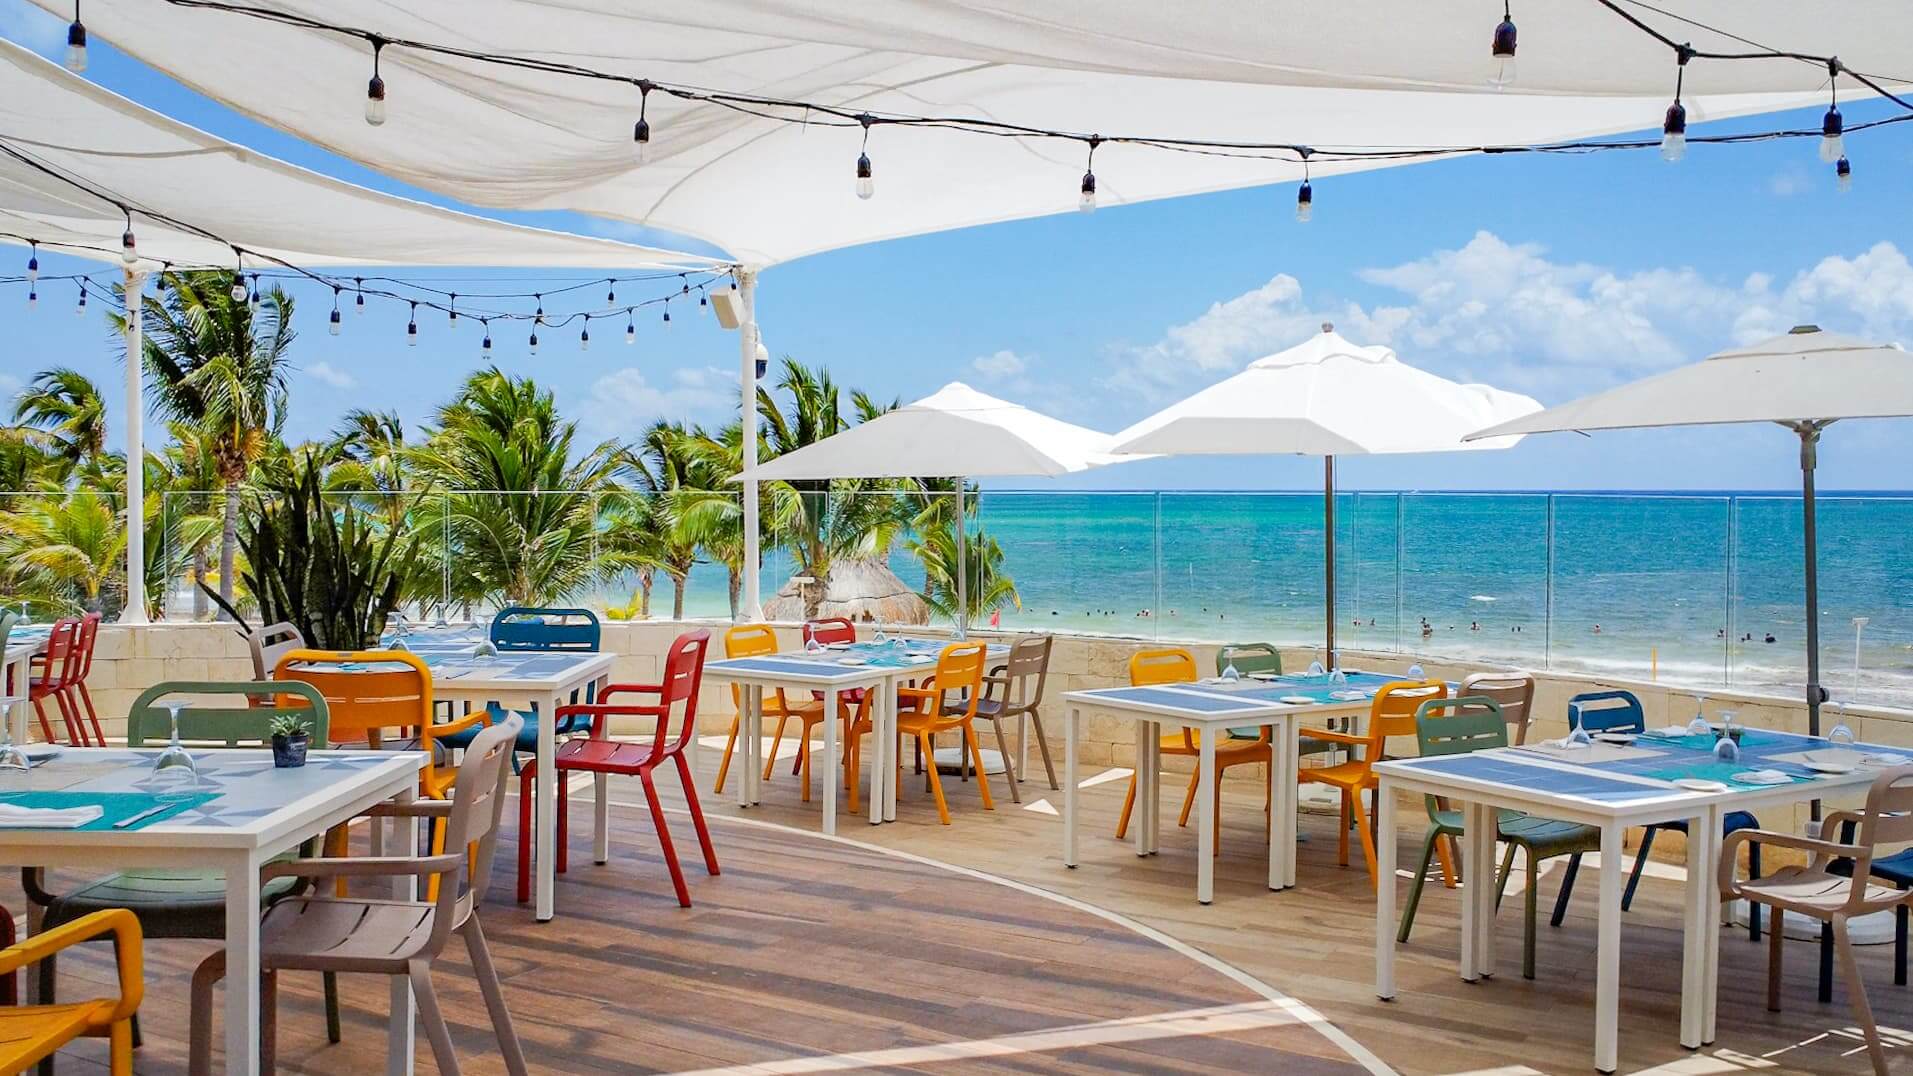 bloved restaurant playa maroma